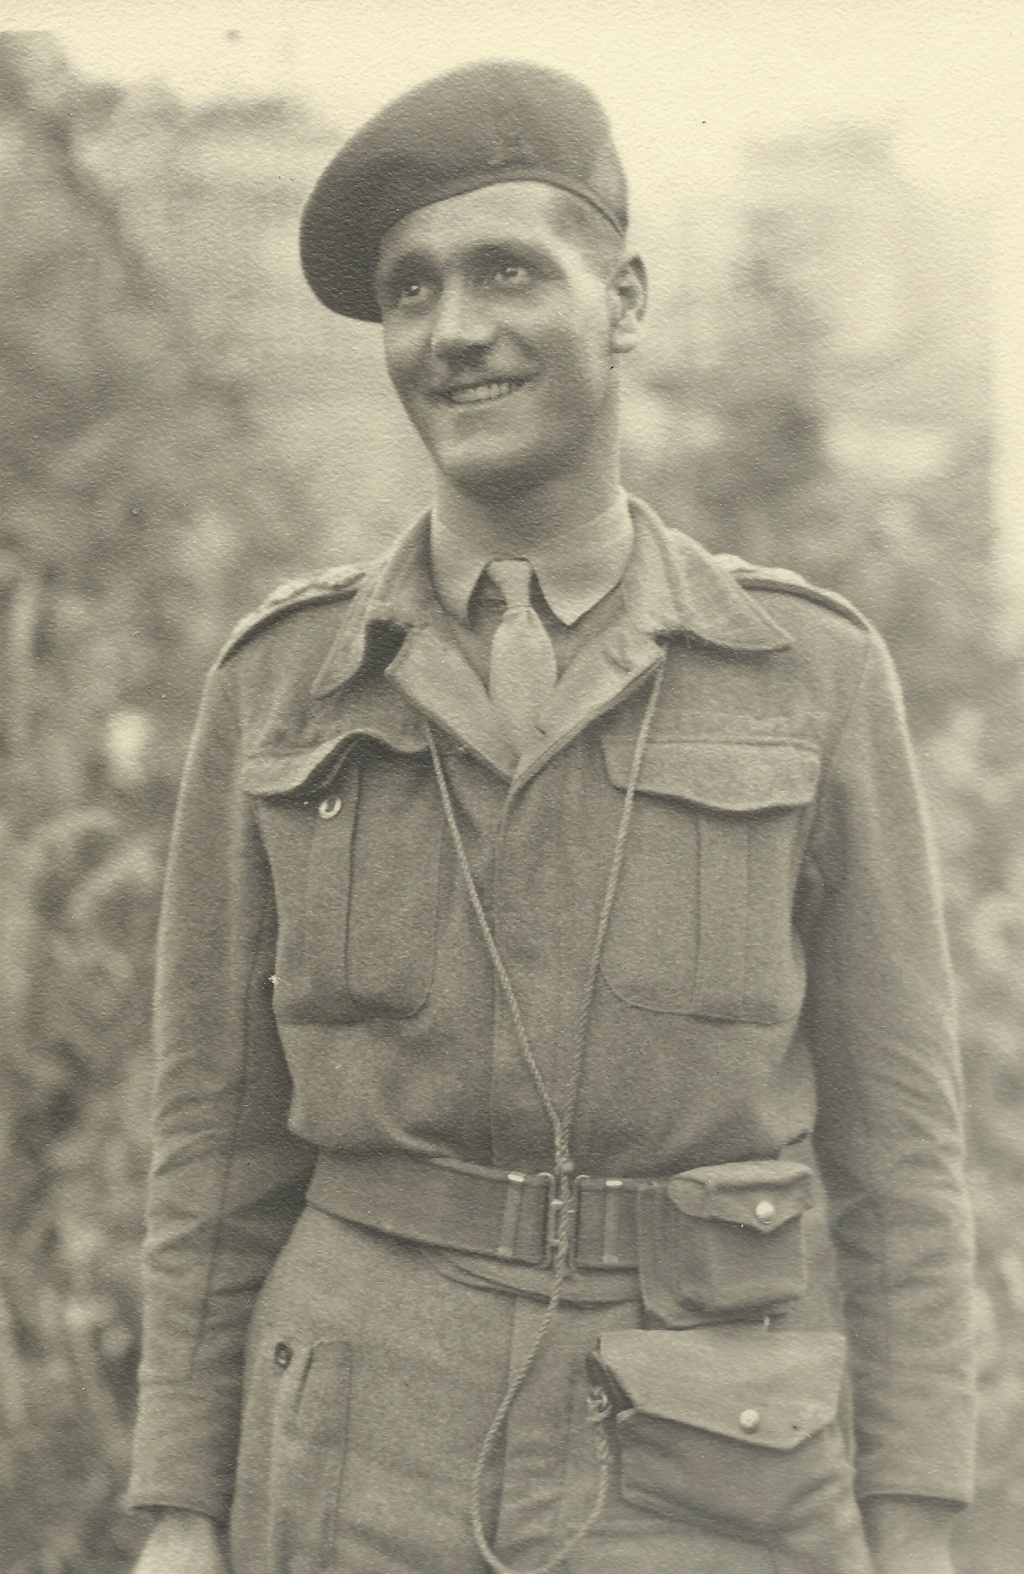 Encore une petite passion : mannequin d'officier britannique du 6 juin 1944 Arro0412